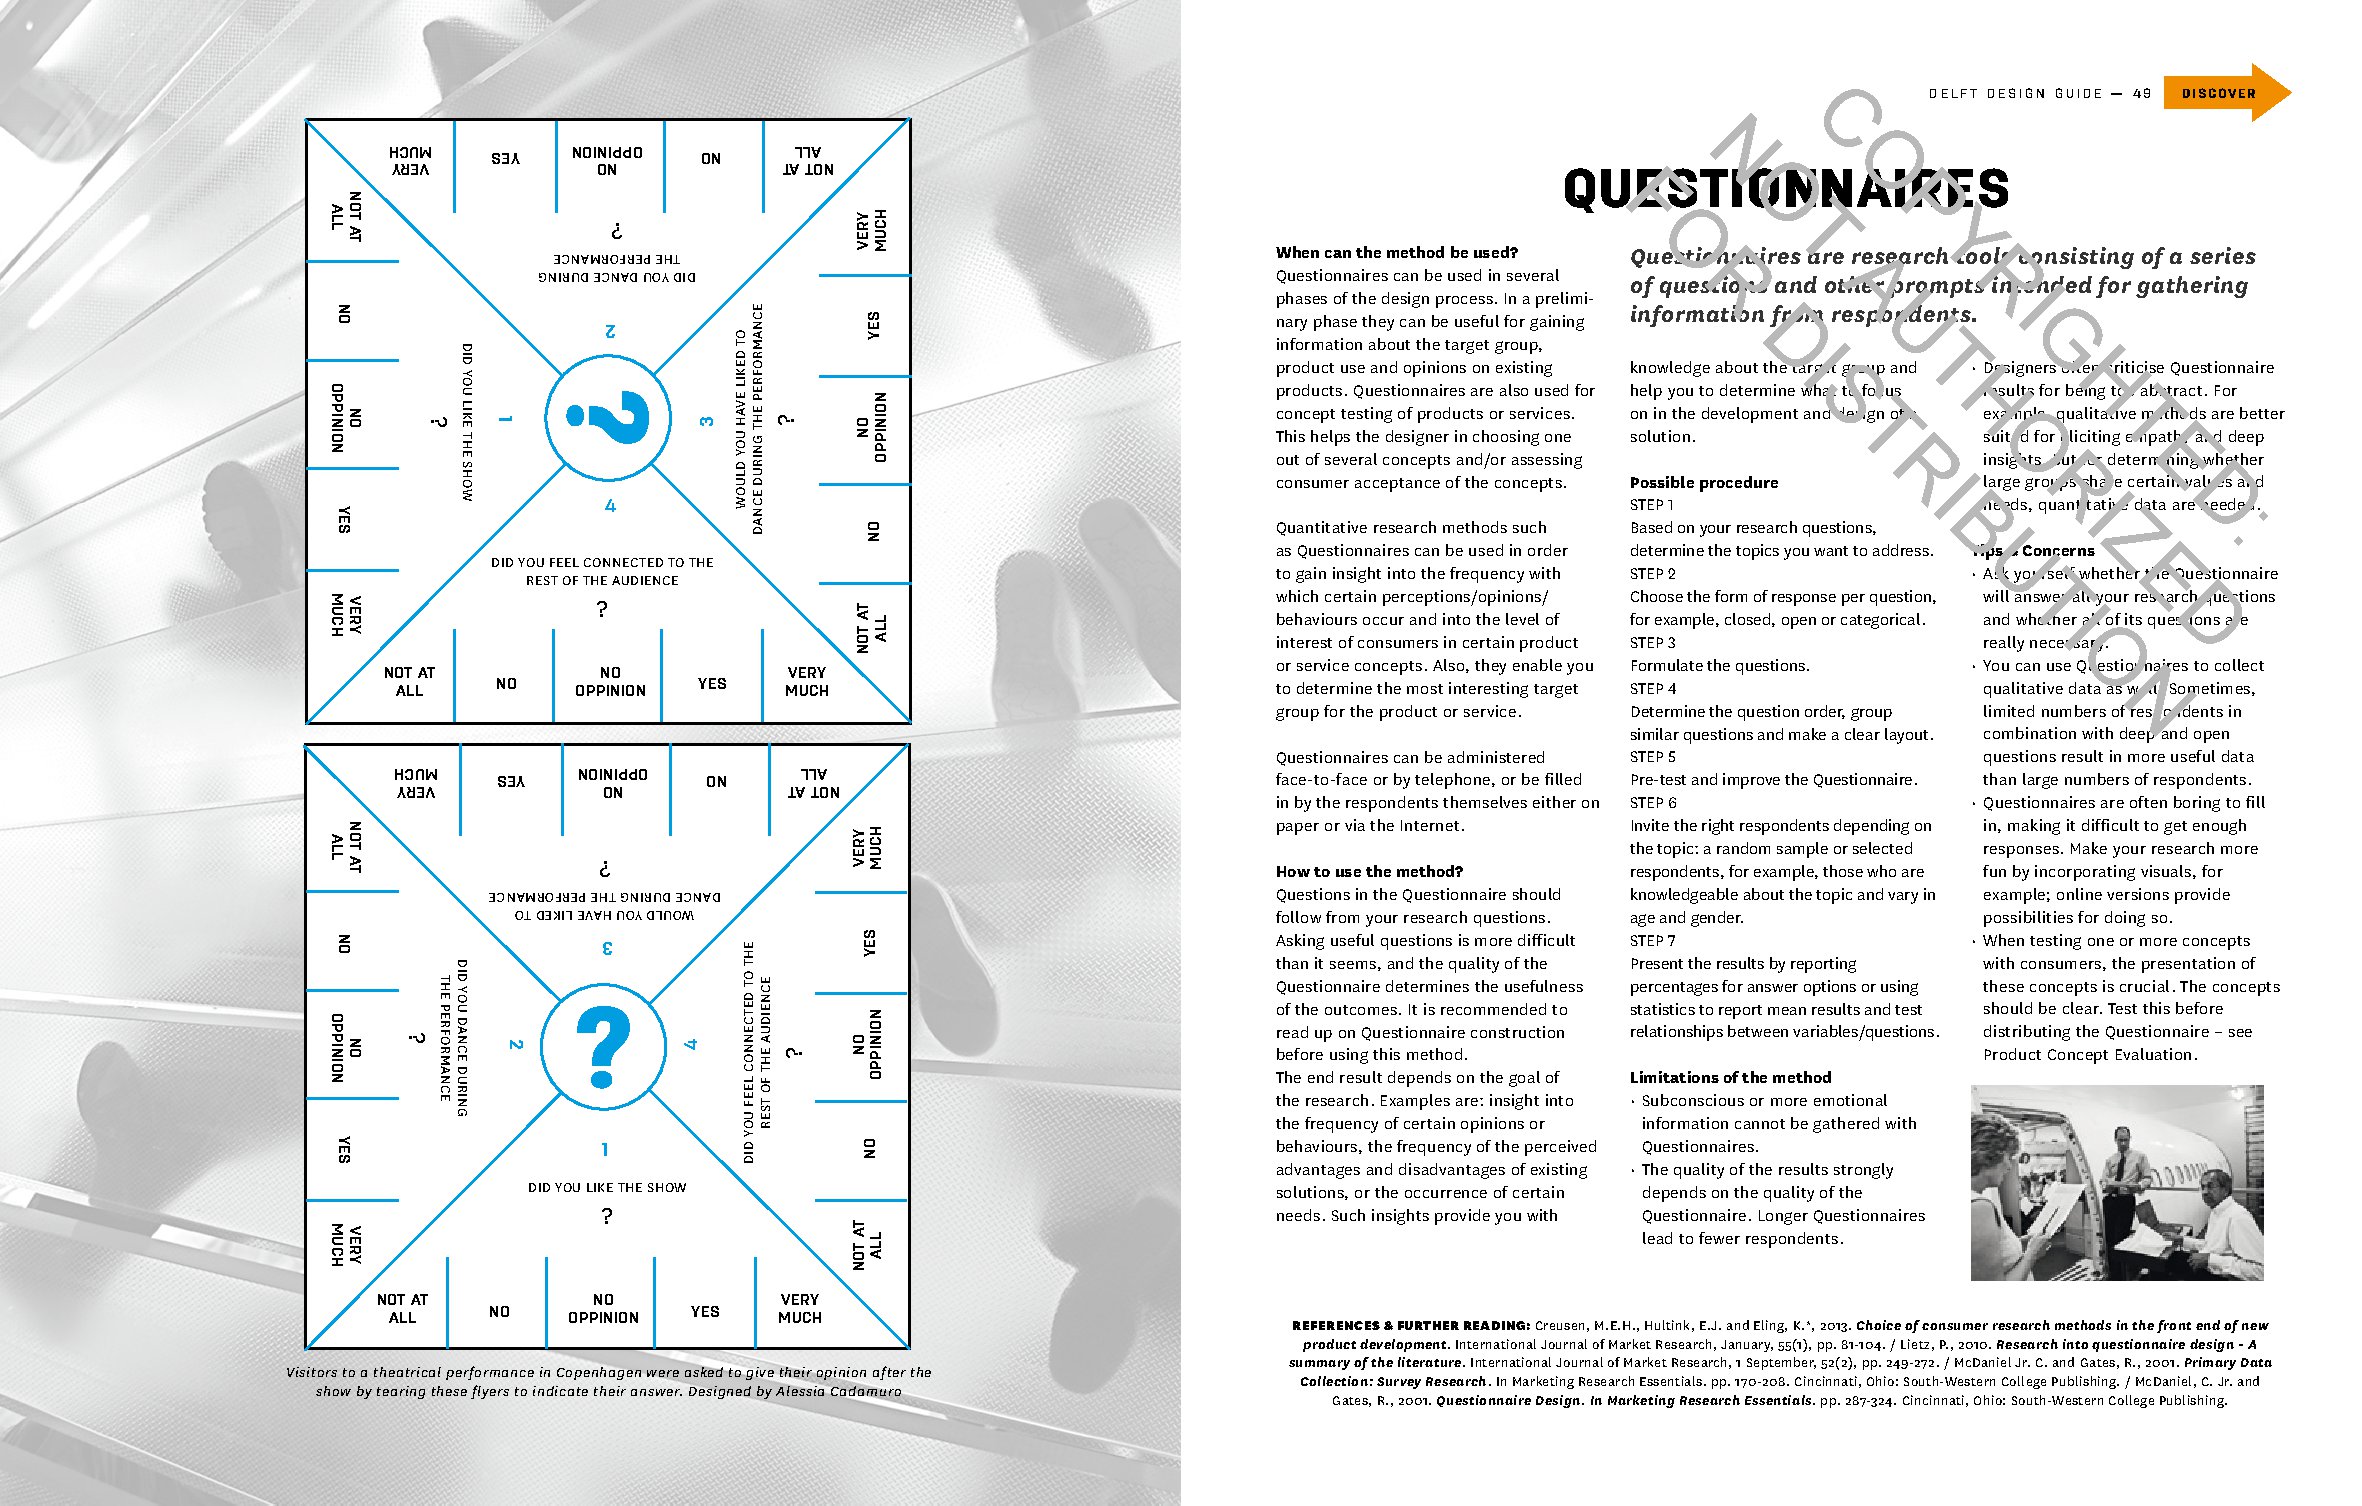 Delft Design Guide (revised edition)